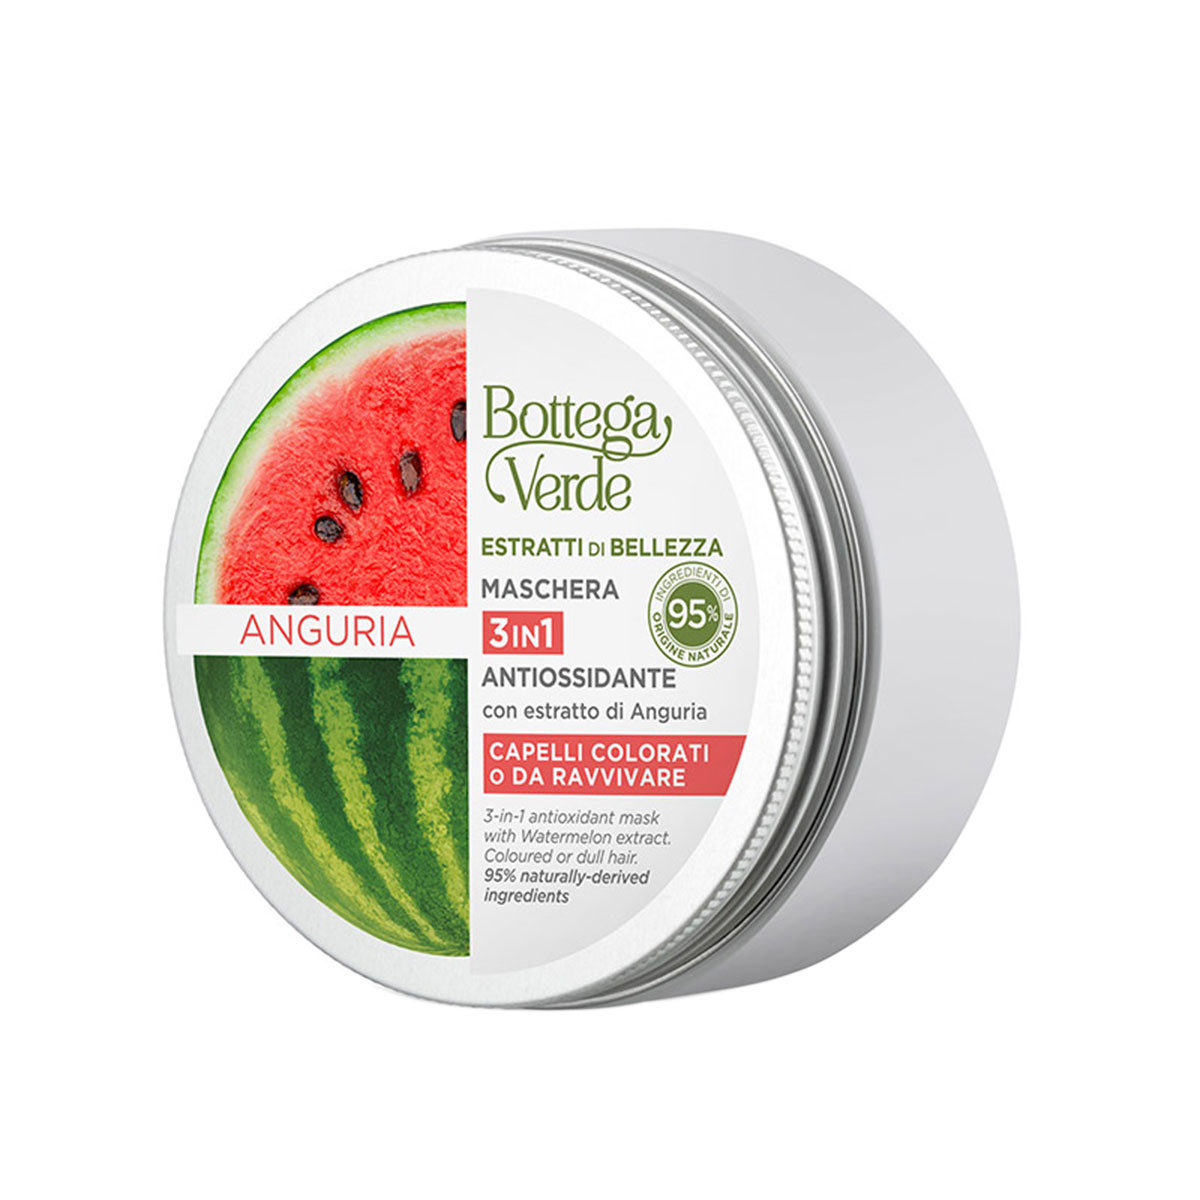 Masca antioxidanta 3 in 1, cu extract de pepene verde Bottega Verde imagine